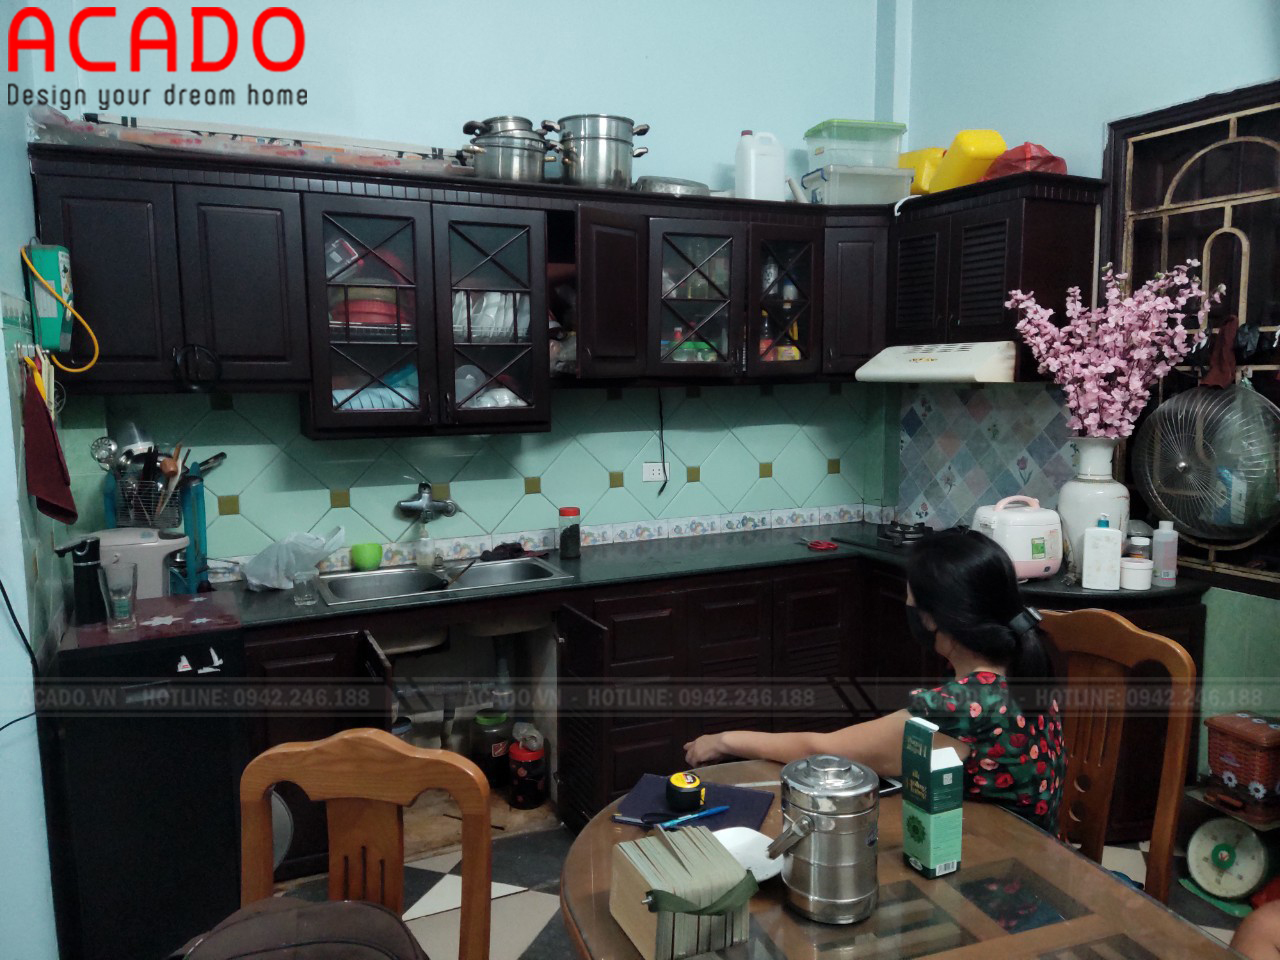 Hiện trạng căn bếp của gia đình cô Thủy khi nhân viên ACADO qua khảo sát